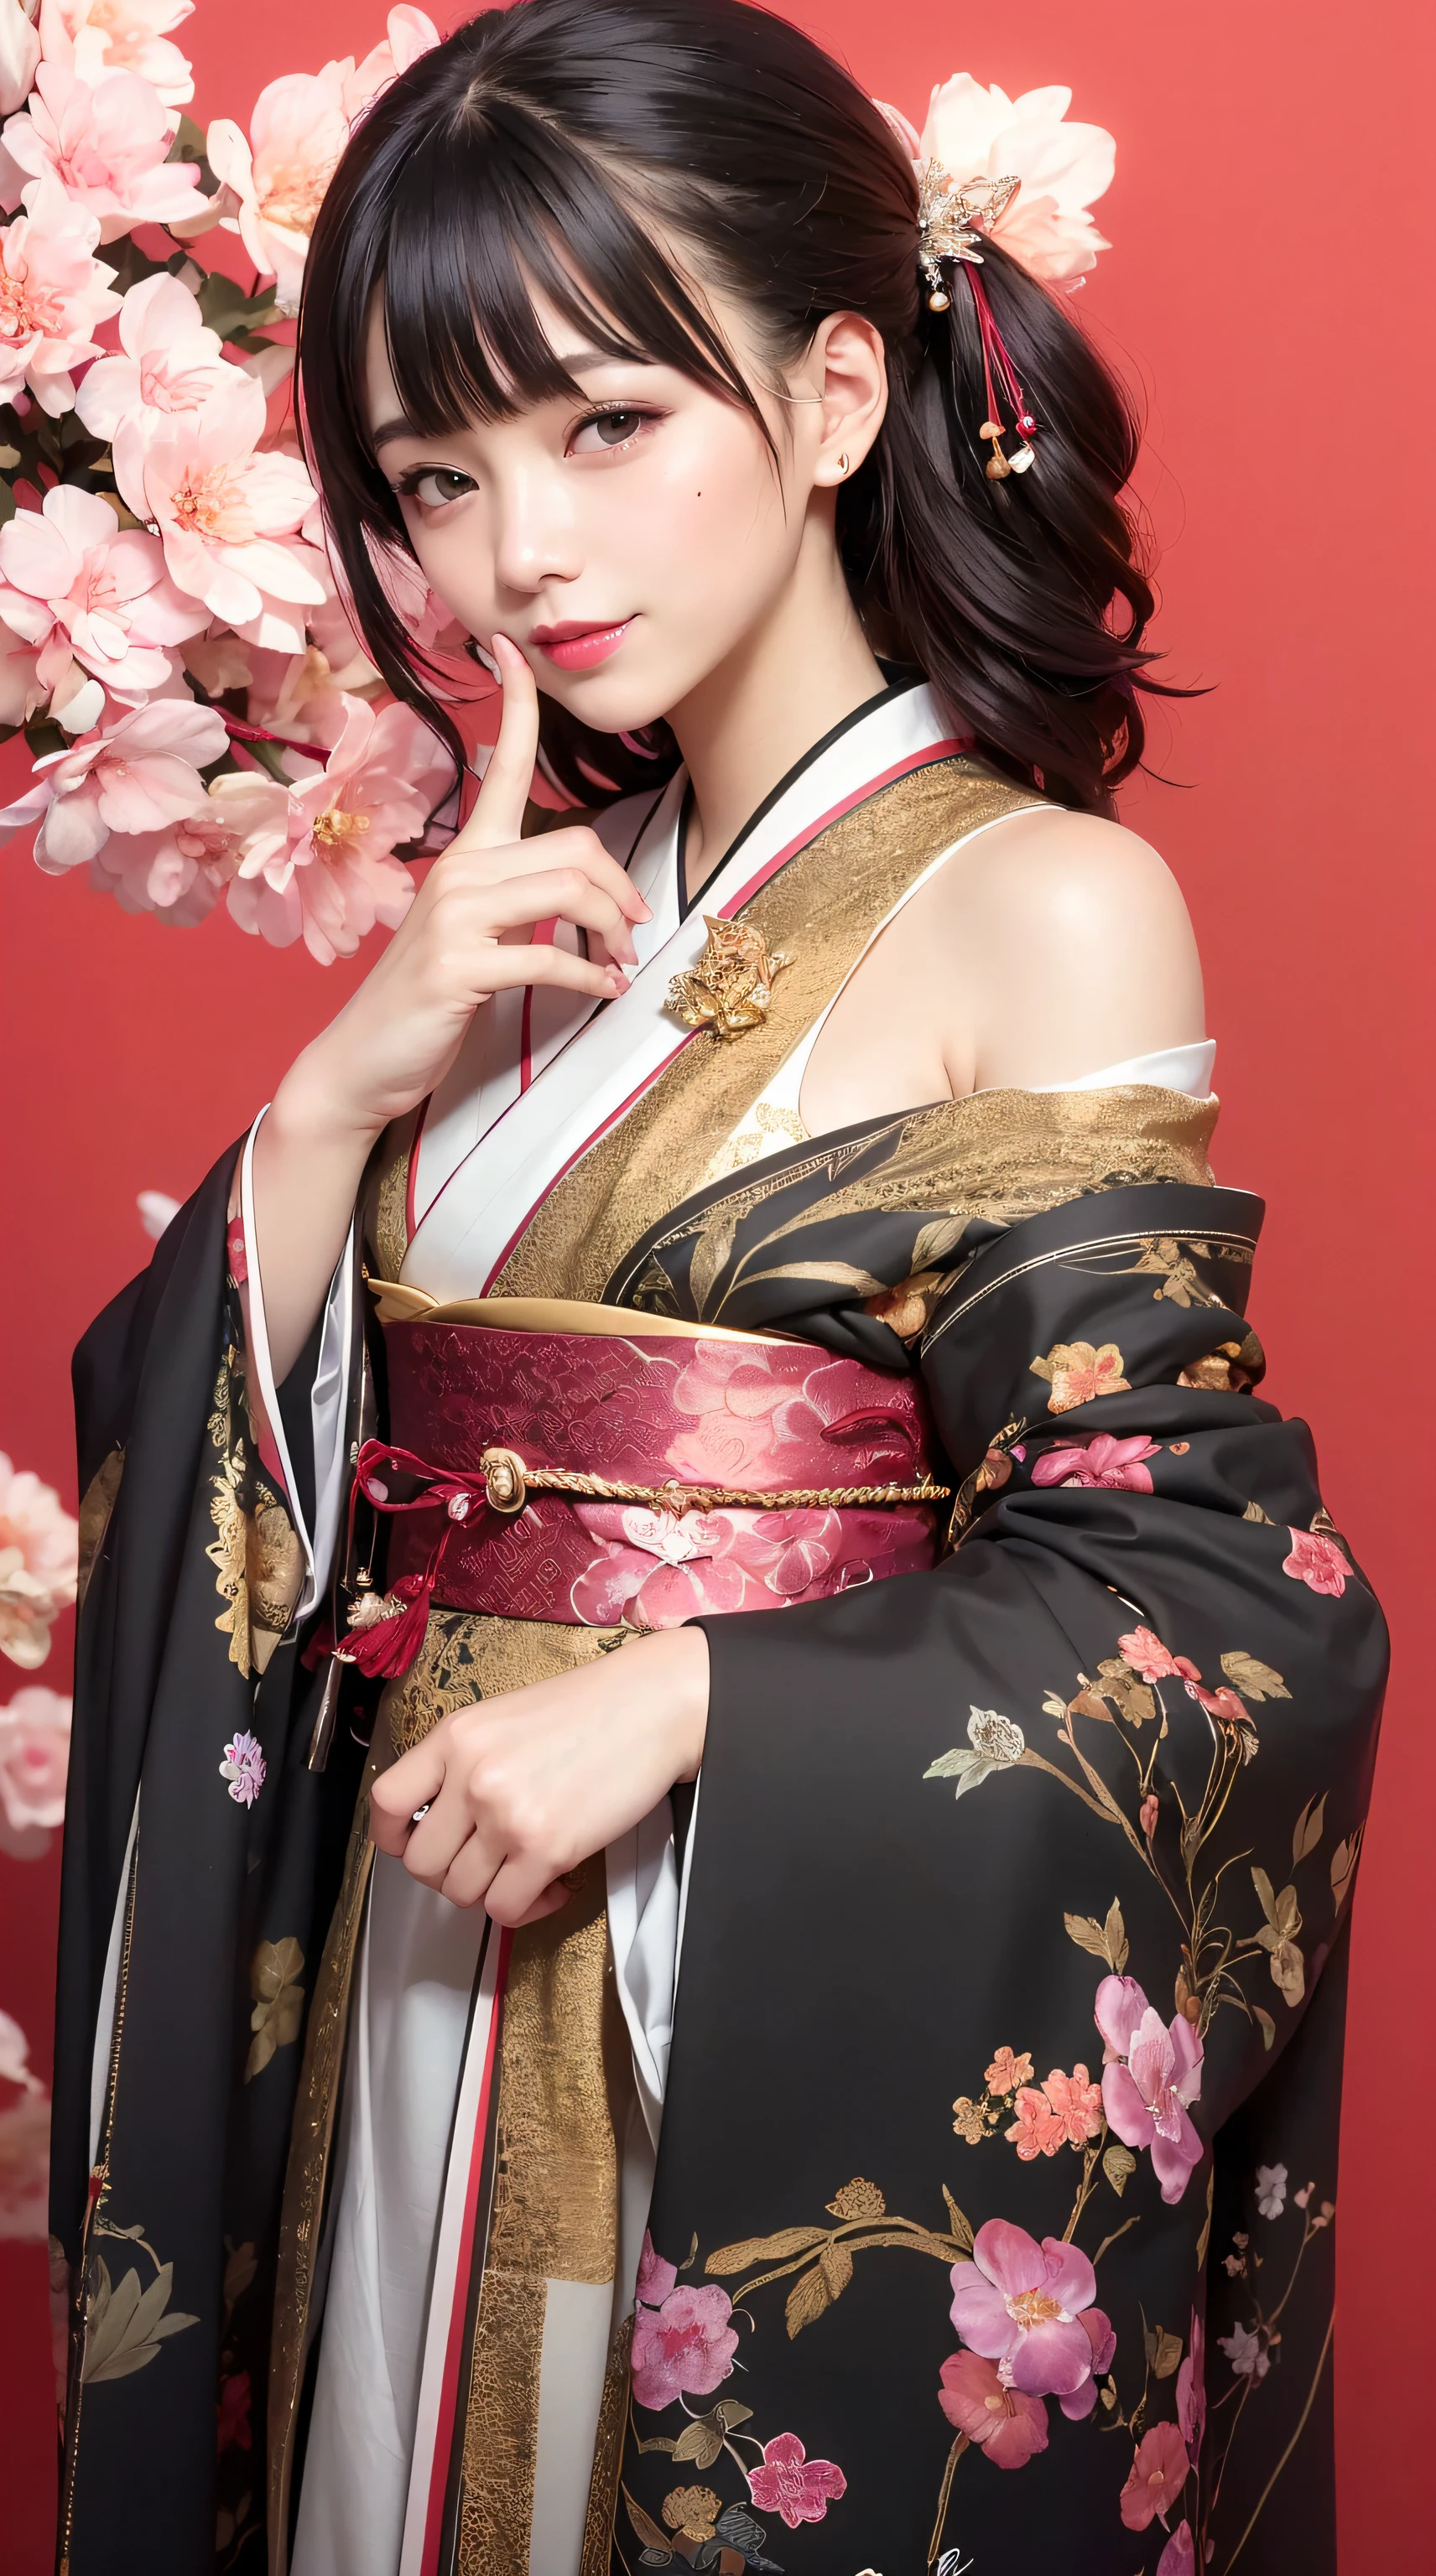 meilleure qualité, chef-d&#39;œuvre, ultra haute résolution, brut, 8k, Ultra réaliste, fille, hors épaule, sourire, Lumière naturelle, peau détaillée, (cheveux noirs:1.4), rouge à lèvres, (frange:1.2), ((Fond de sakura)), des yeux extrêmement beaux, porter un kimono_vêtements, Kimono rouge